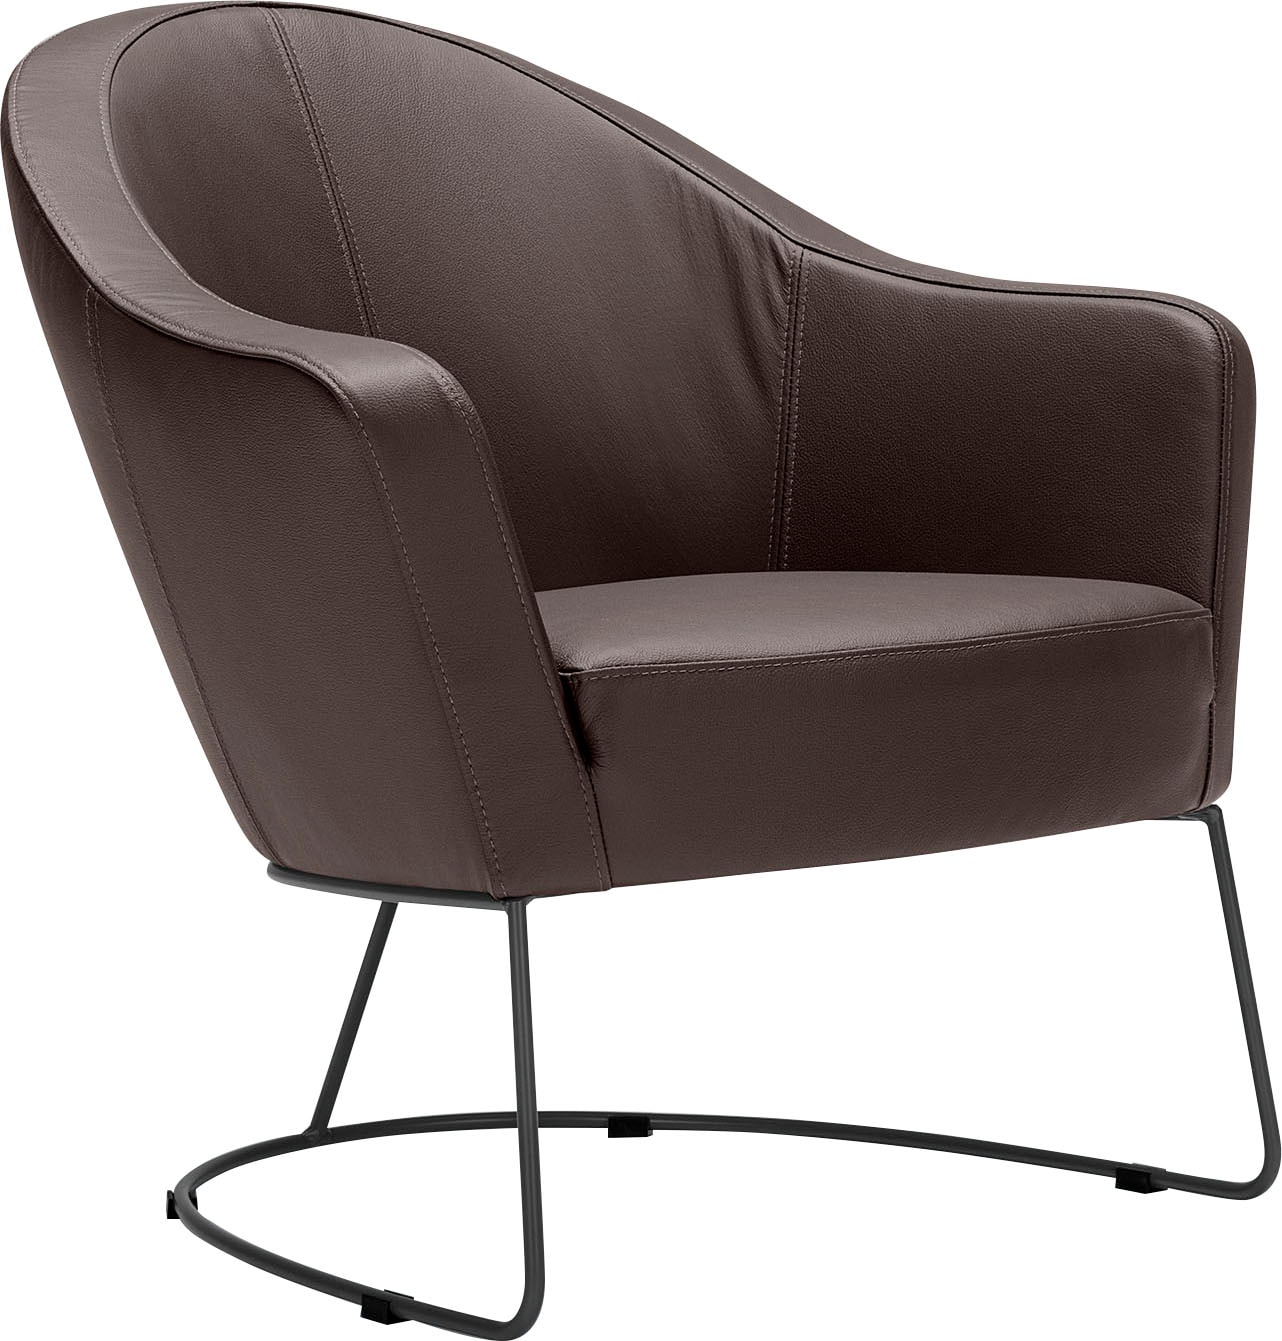 LOVI Loungesessel "Grape", Metallrahmen grau, Sitzfläche in Formschaum für luftiges Sitzgefühl